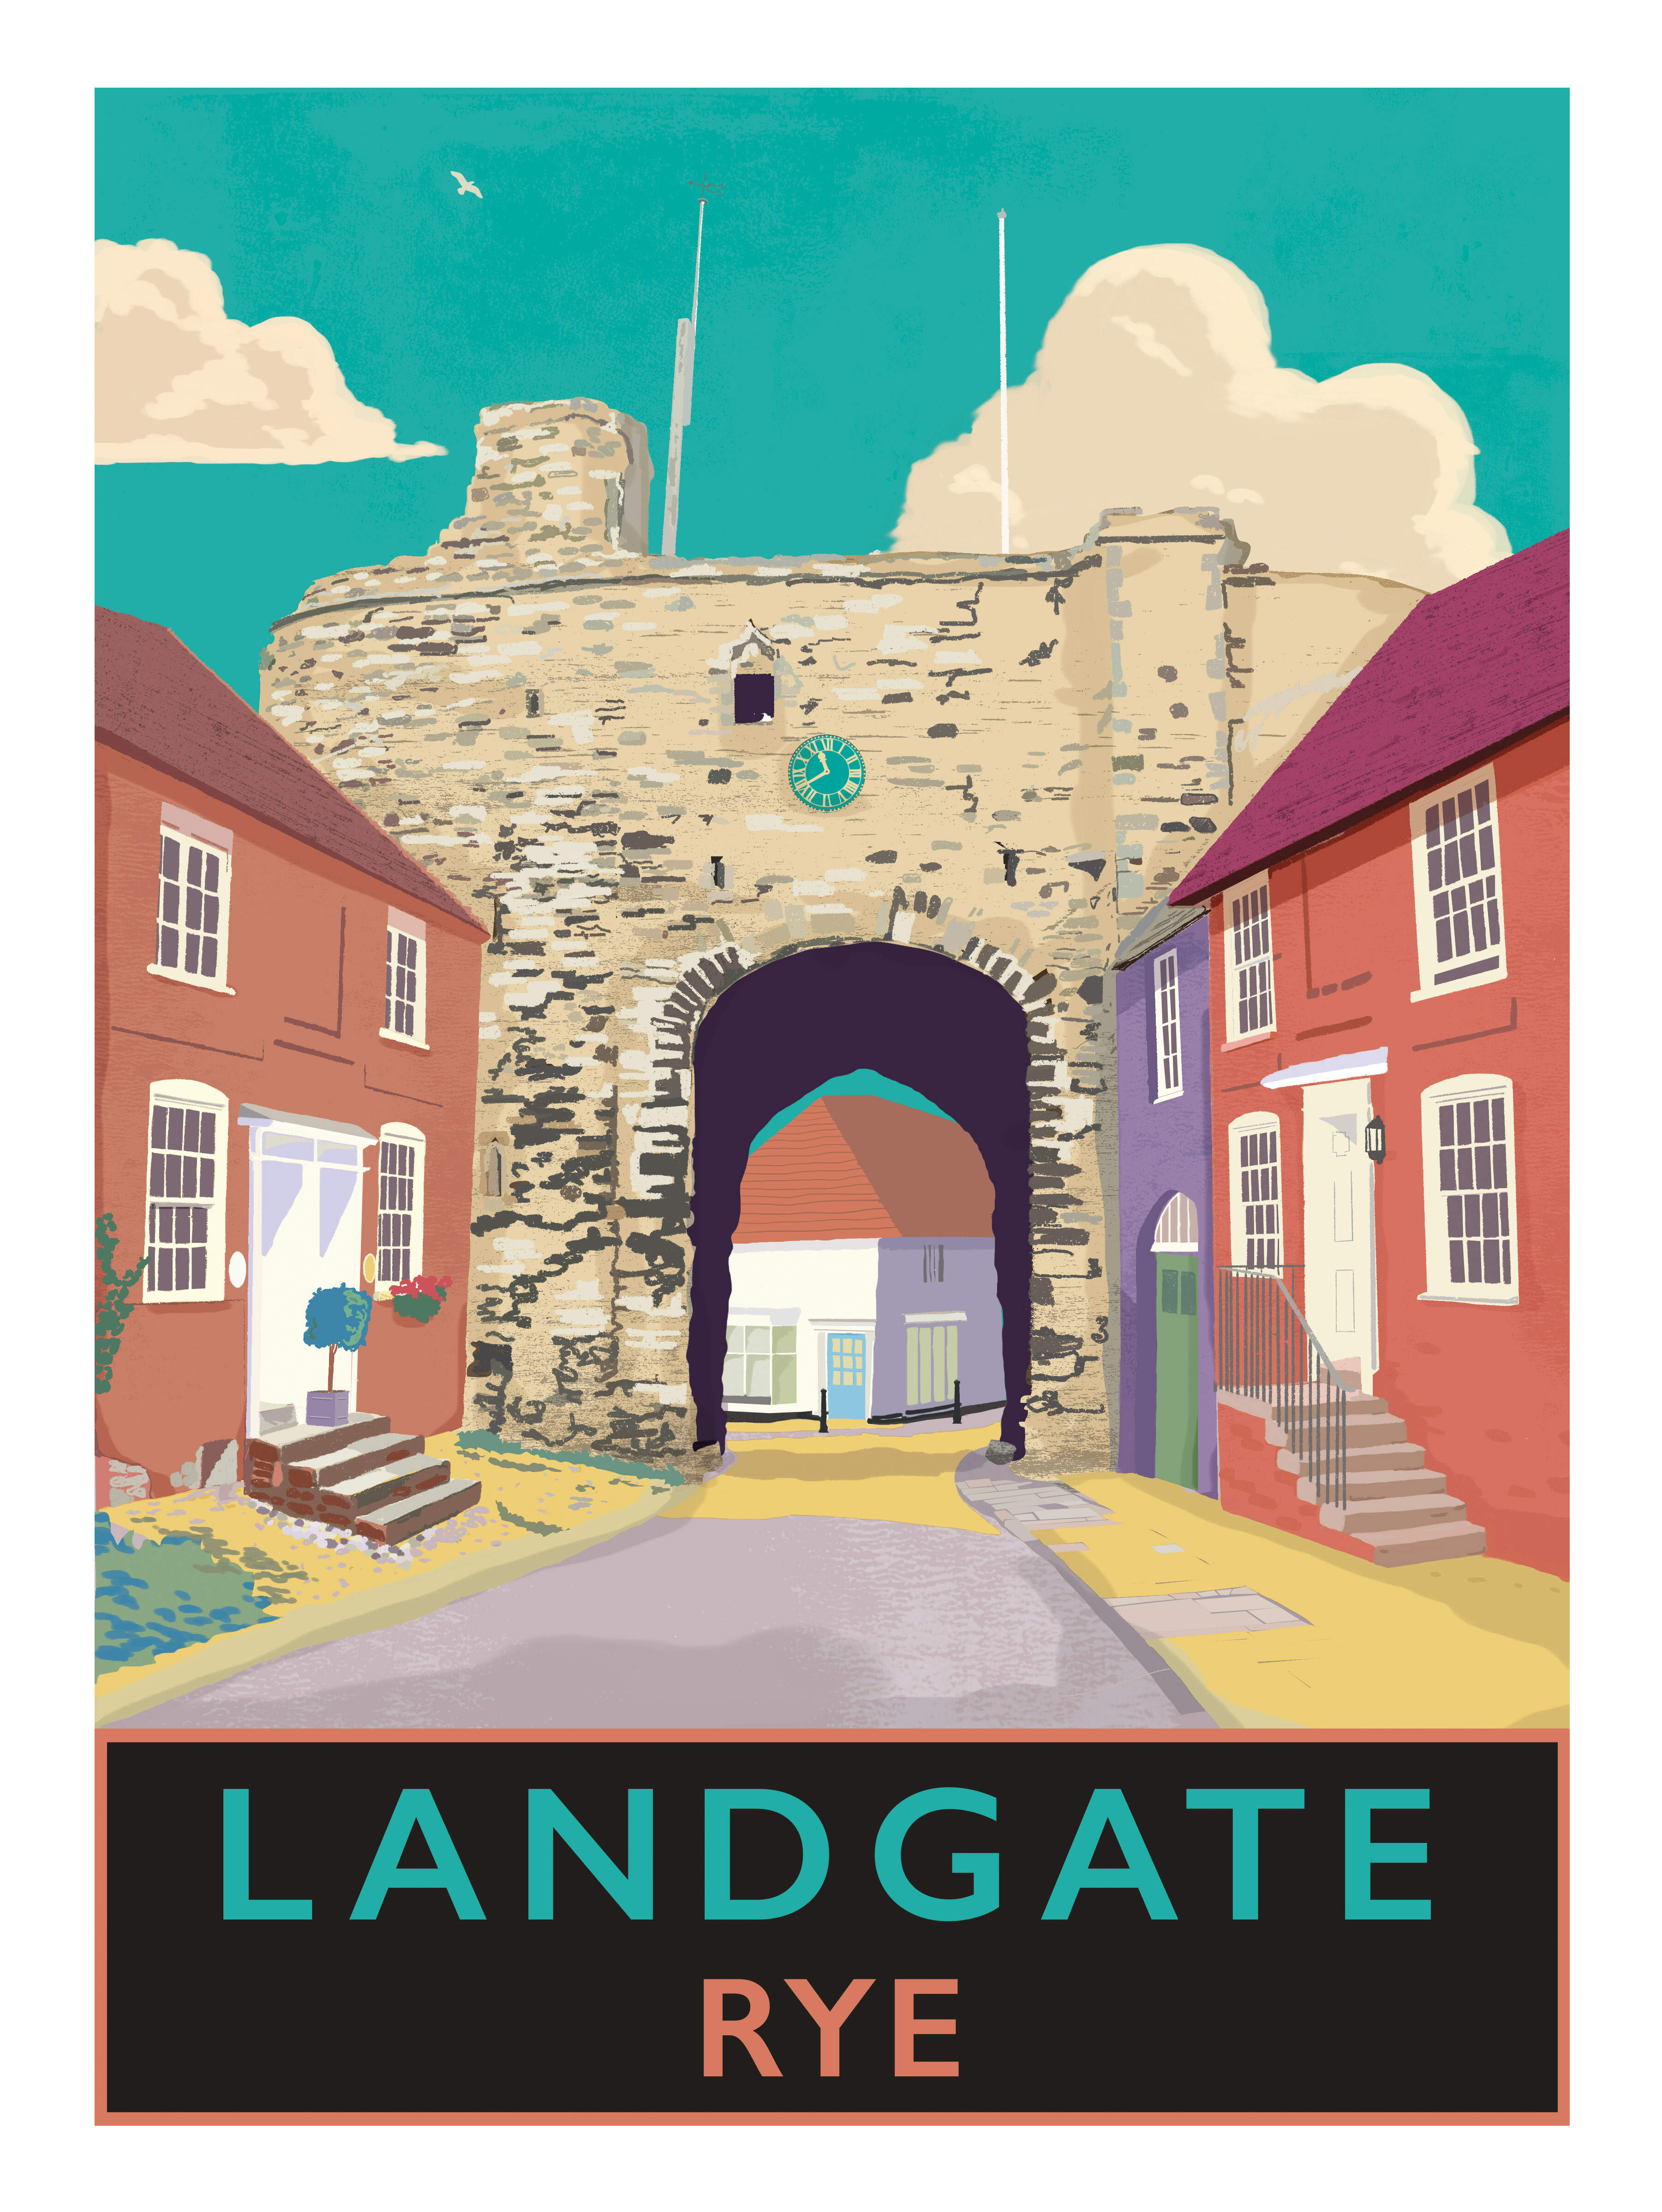 Rye Landgate image licensed to Adams of Rye